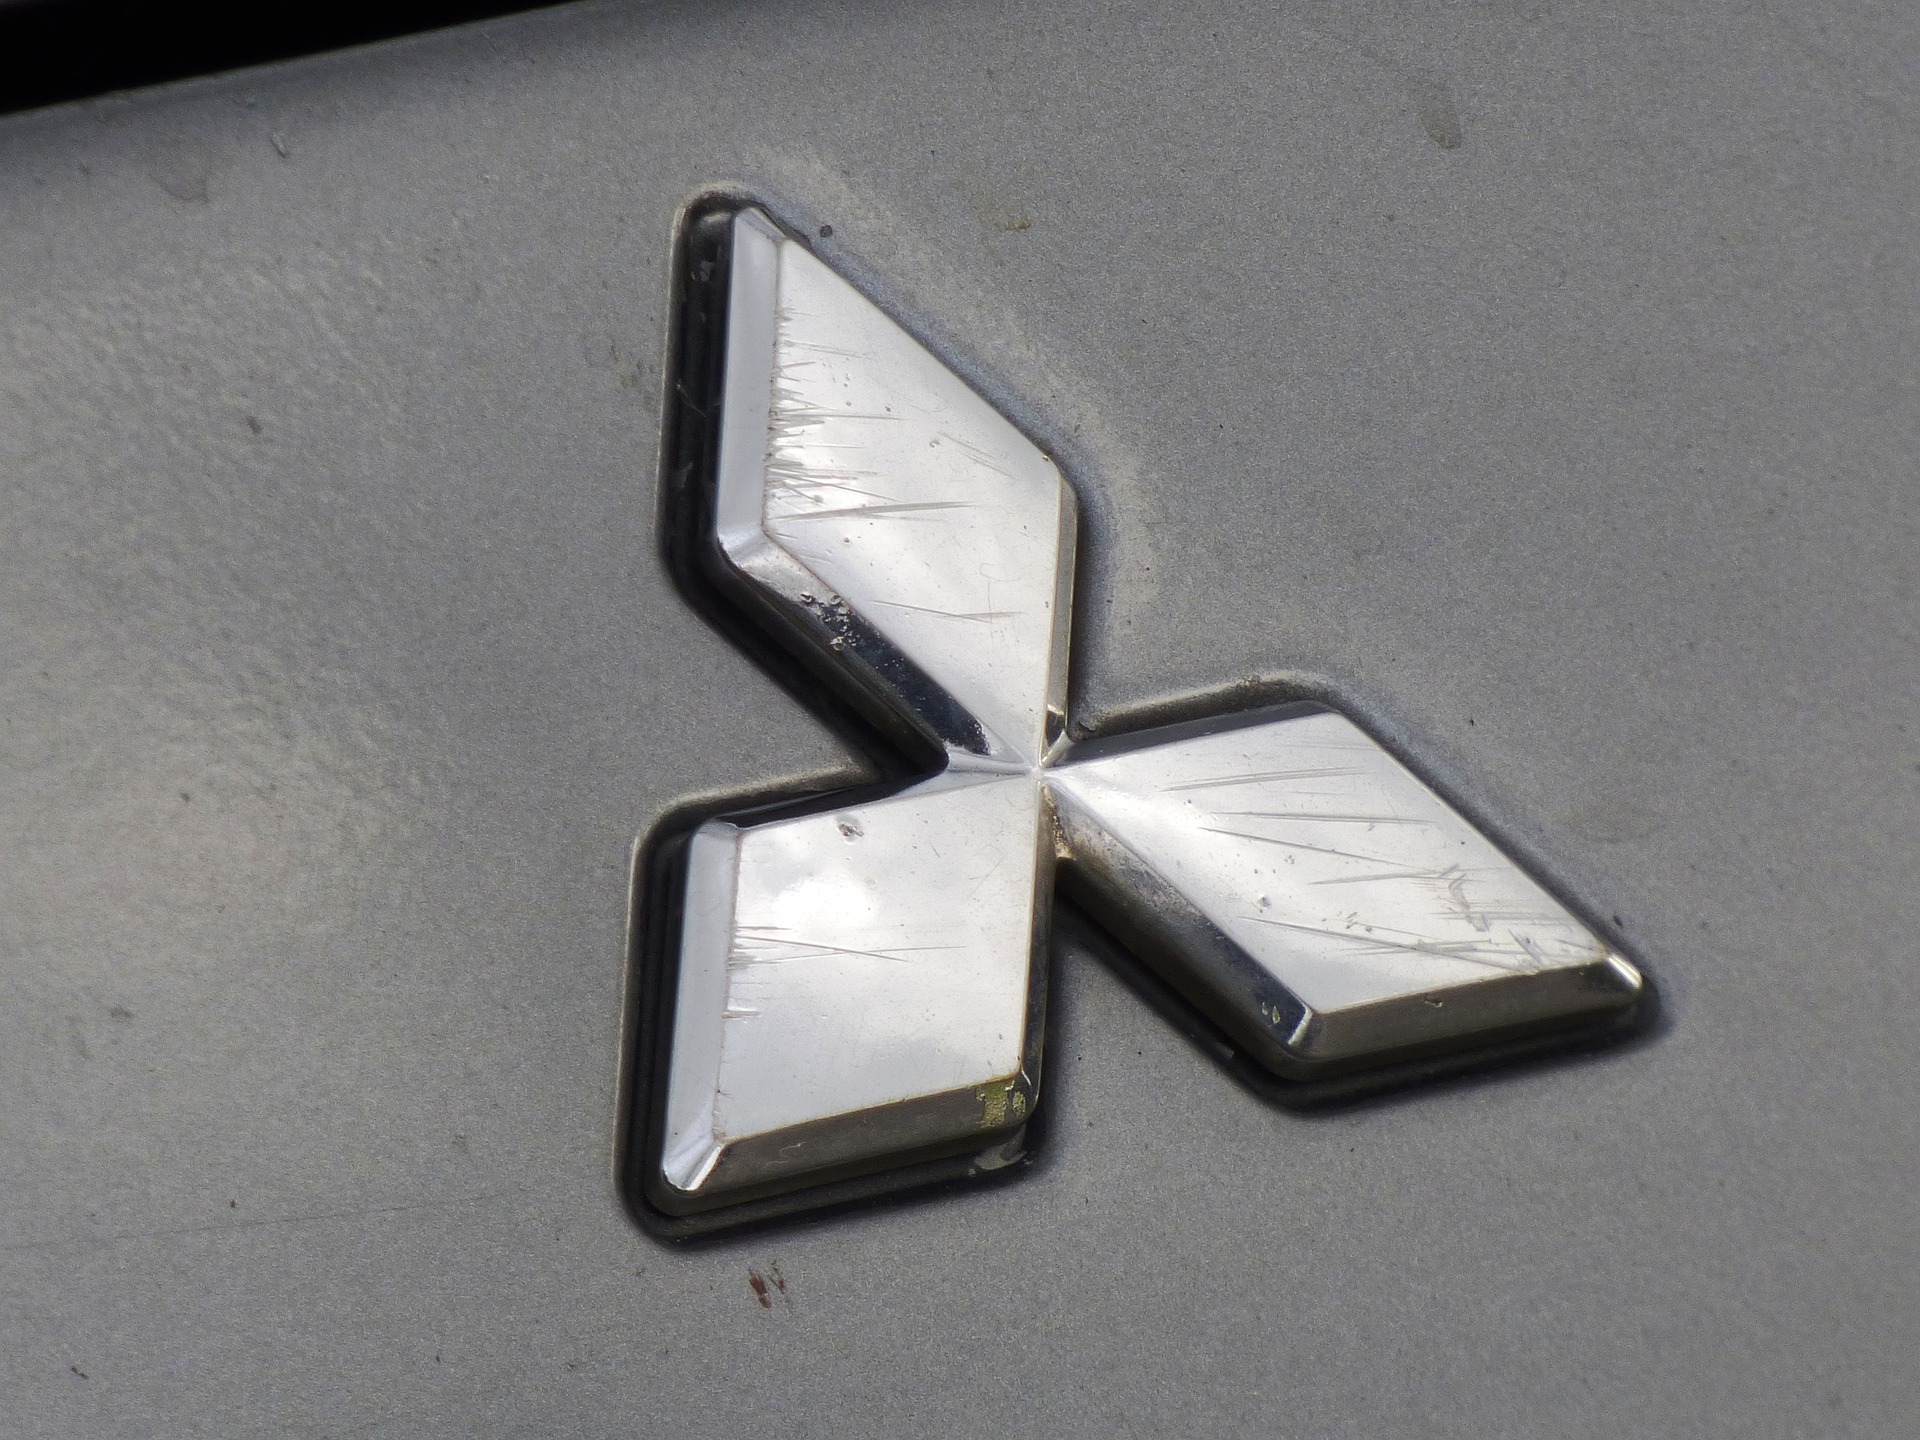 logo-Mitsubishi